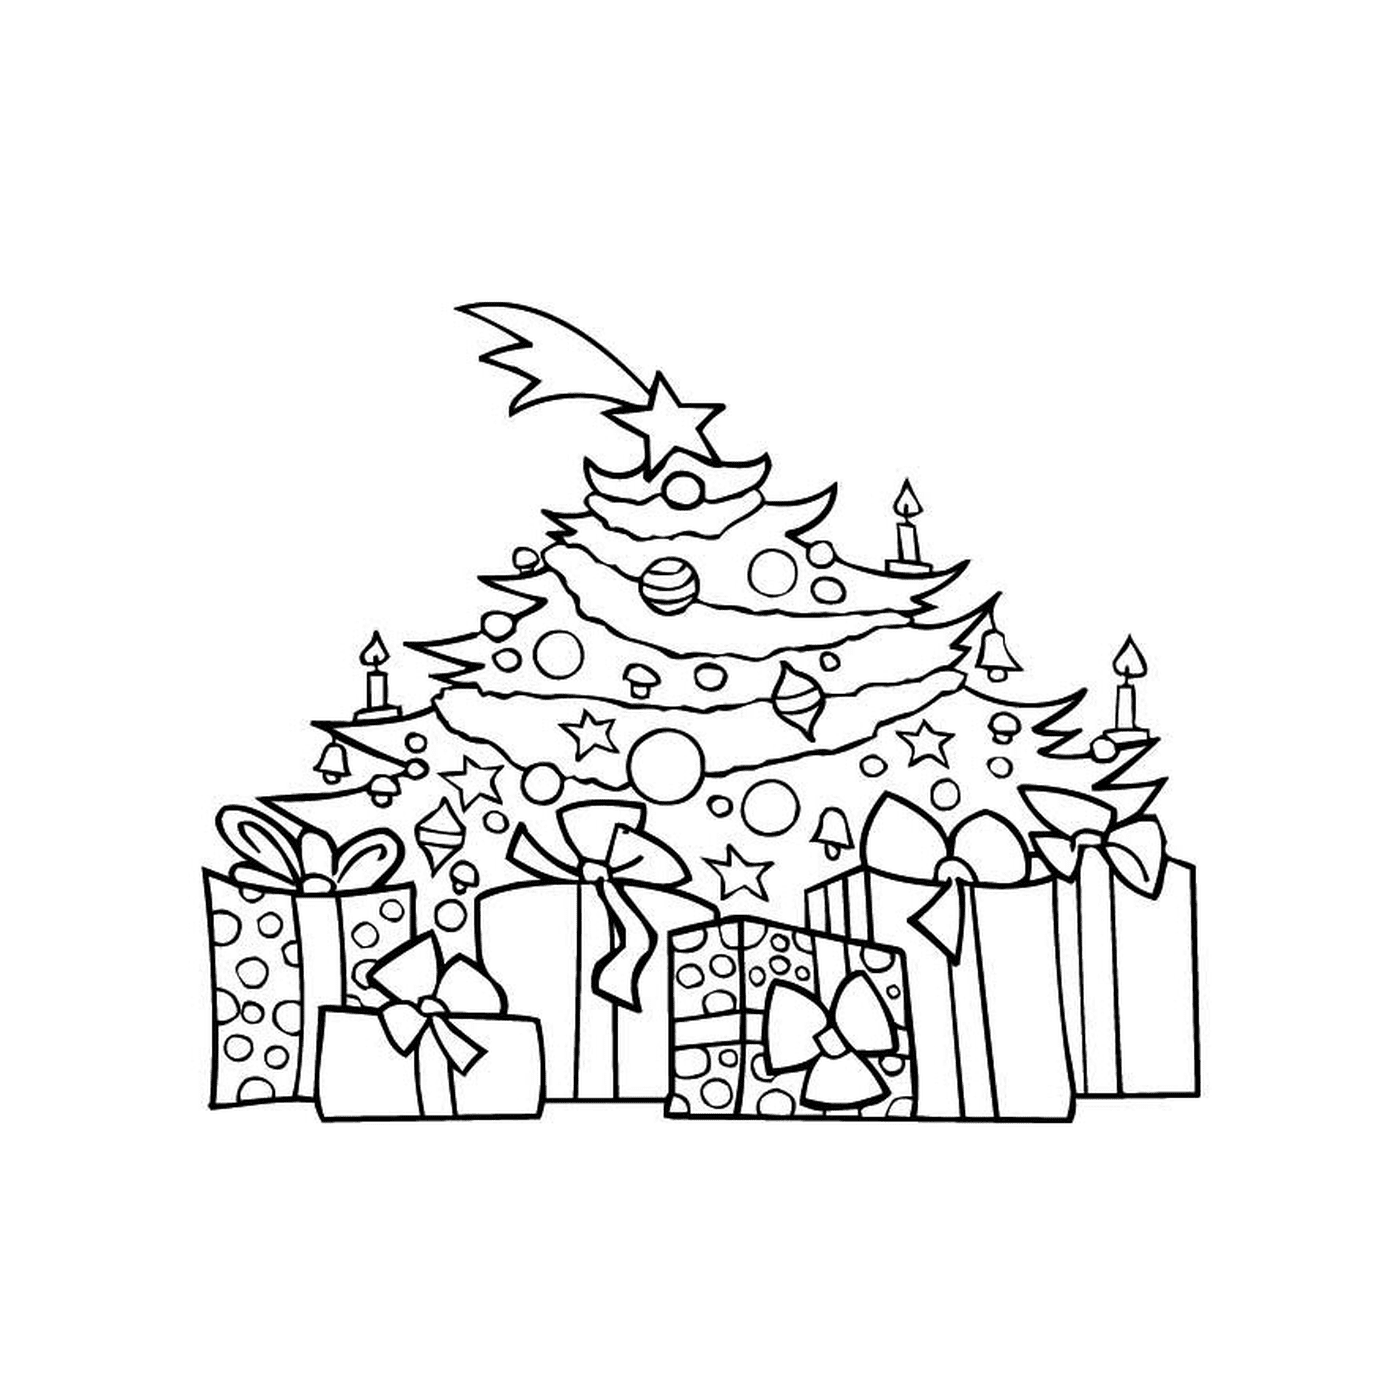  Un árbol de Navidad con regalos 